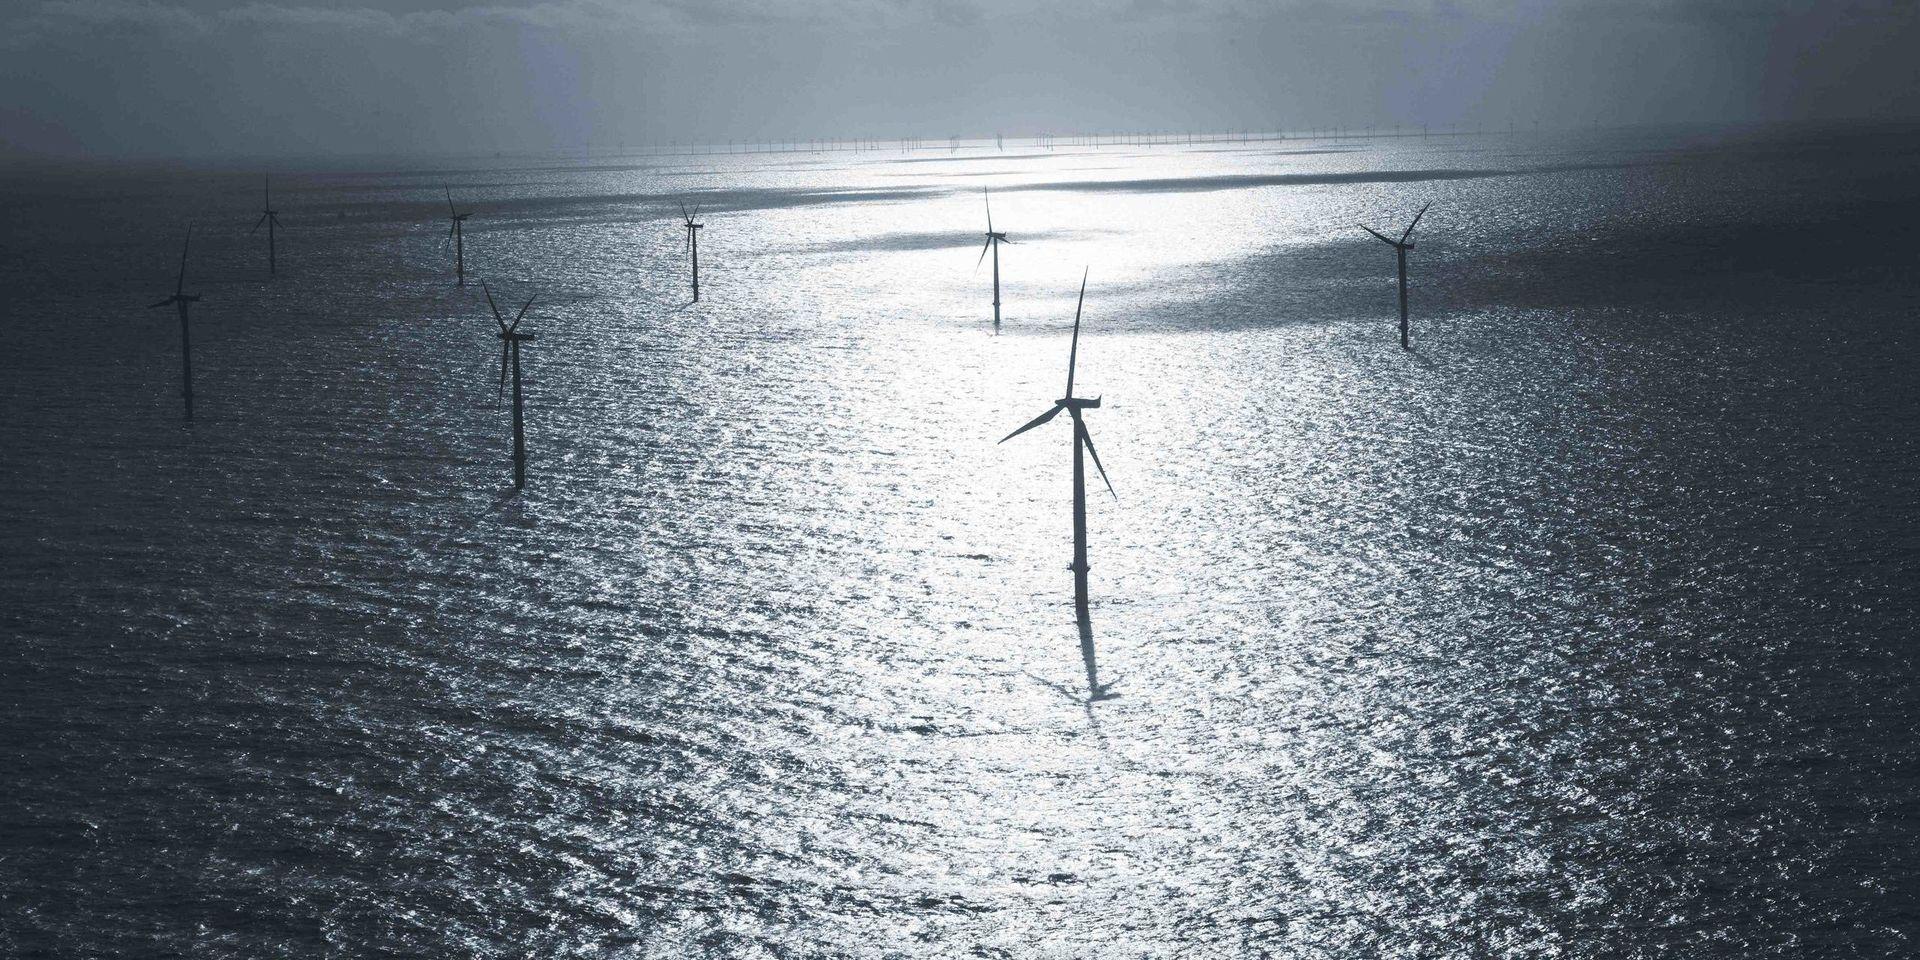 OX2 AB vill bygga mellan 50 och 83 vindkraftverk, upp till 325 meter höga, i Kattegatt utanför Varberg och Falkenberg. Företaget undersöker nu projektets påverkan på Kattegatts Natura 2000-områden. Bilden är från en vindkraftspark i Nordsjön.